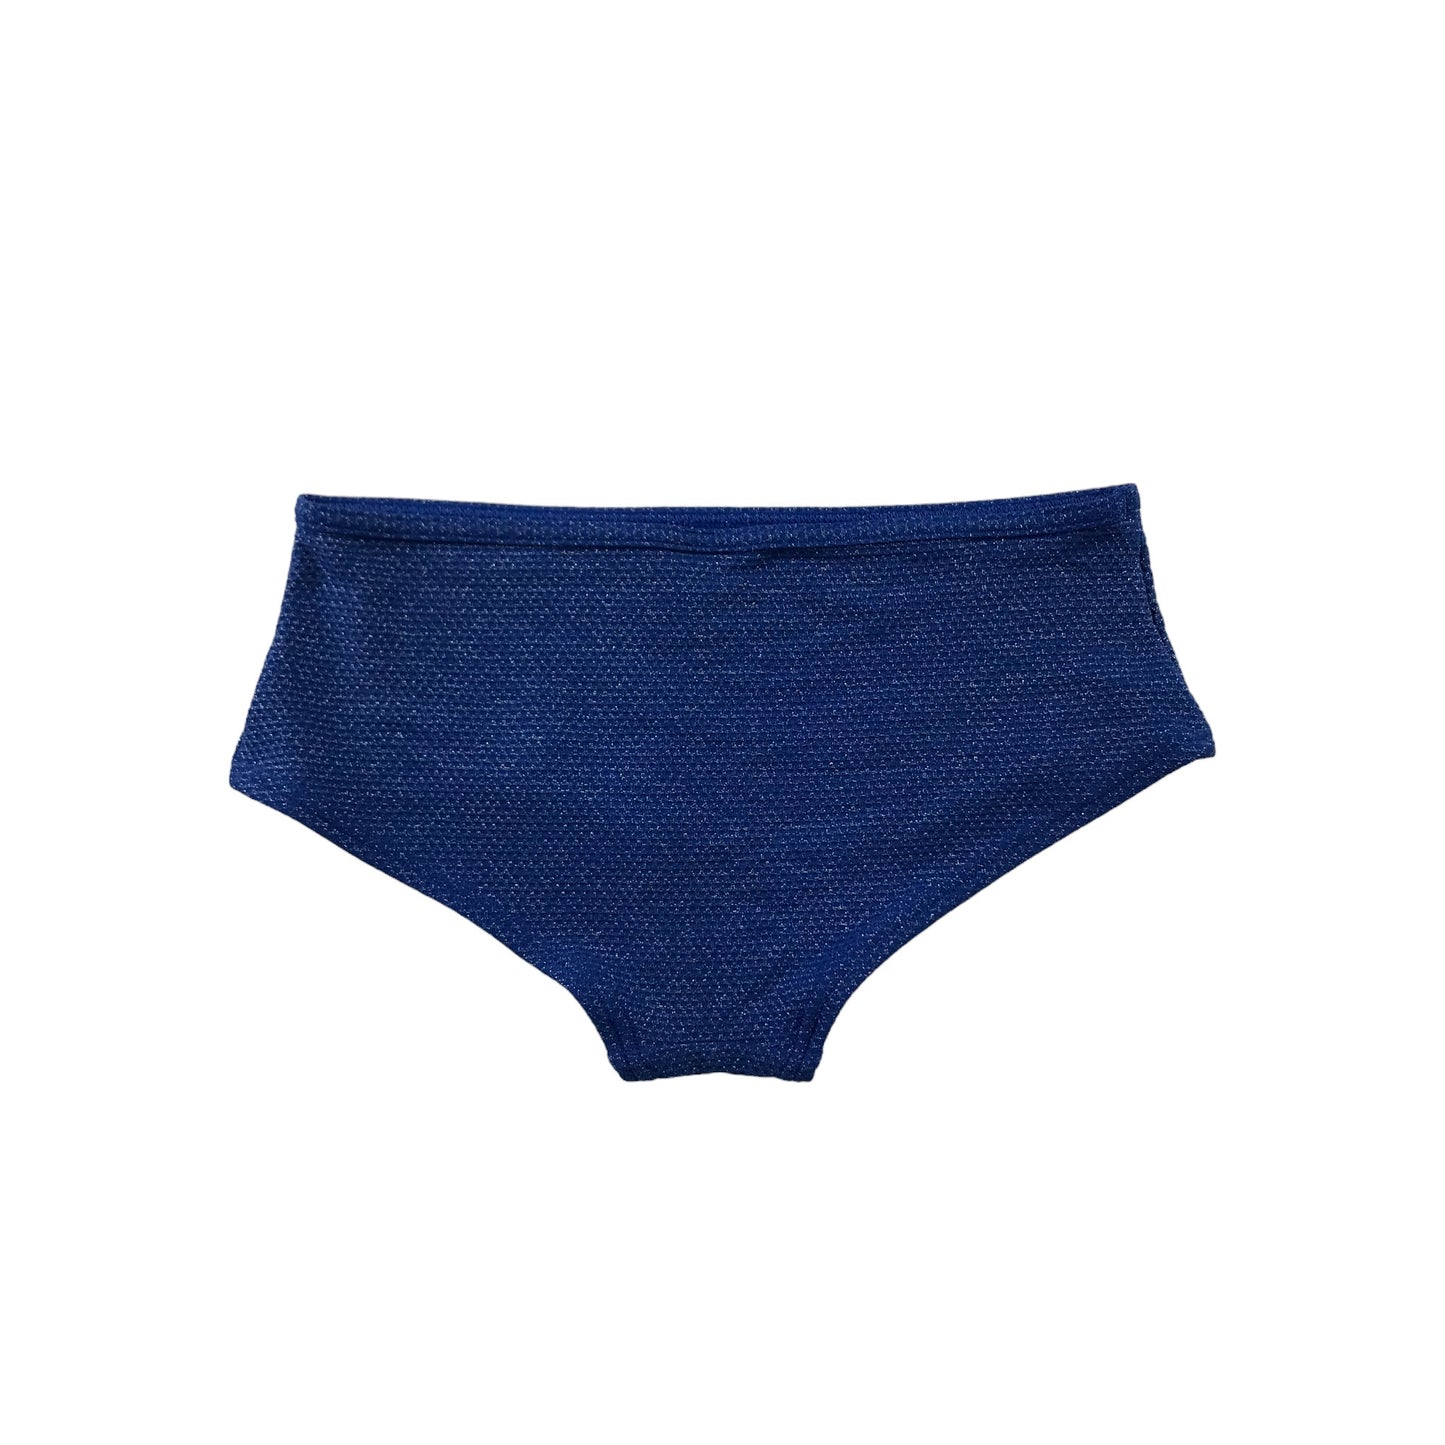 M&S Swimsuit Age 8 Blue Sparkly 2-piece Set